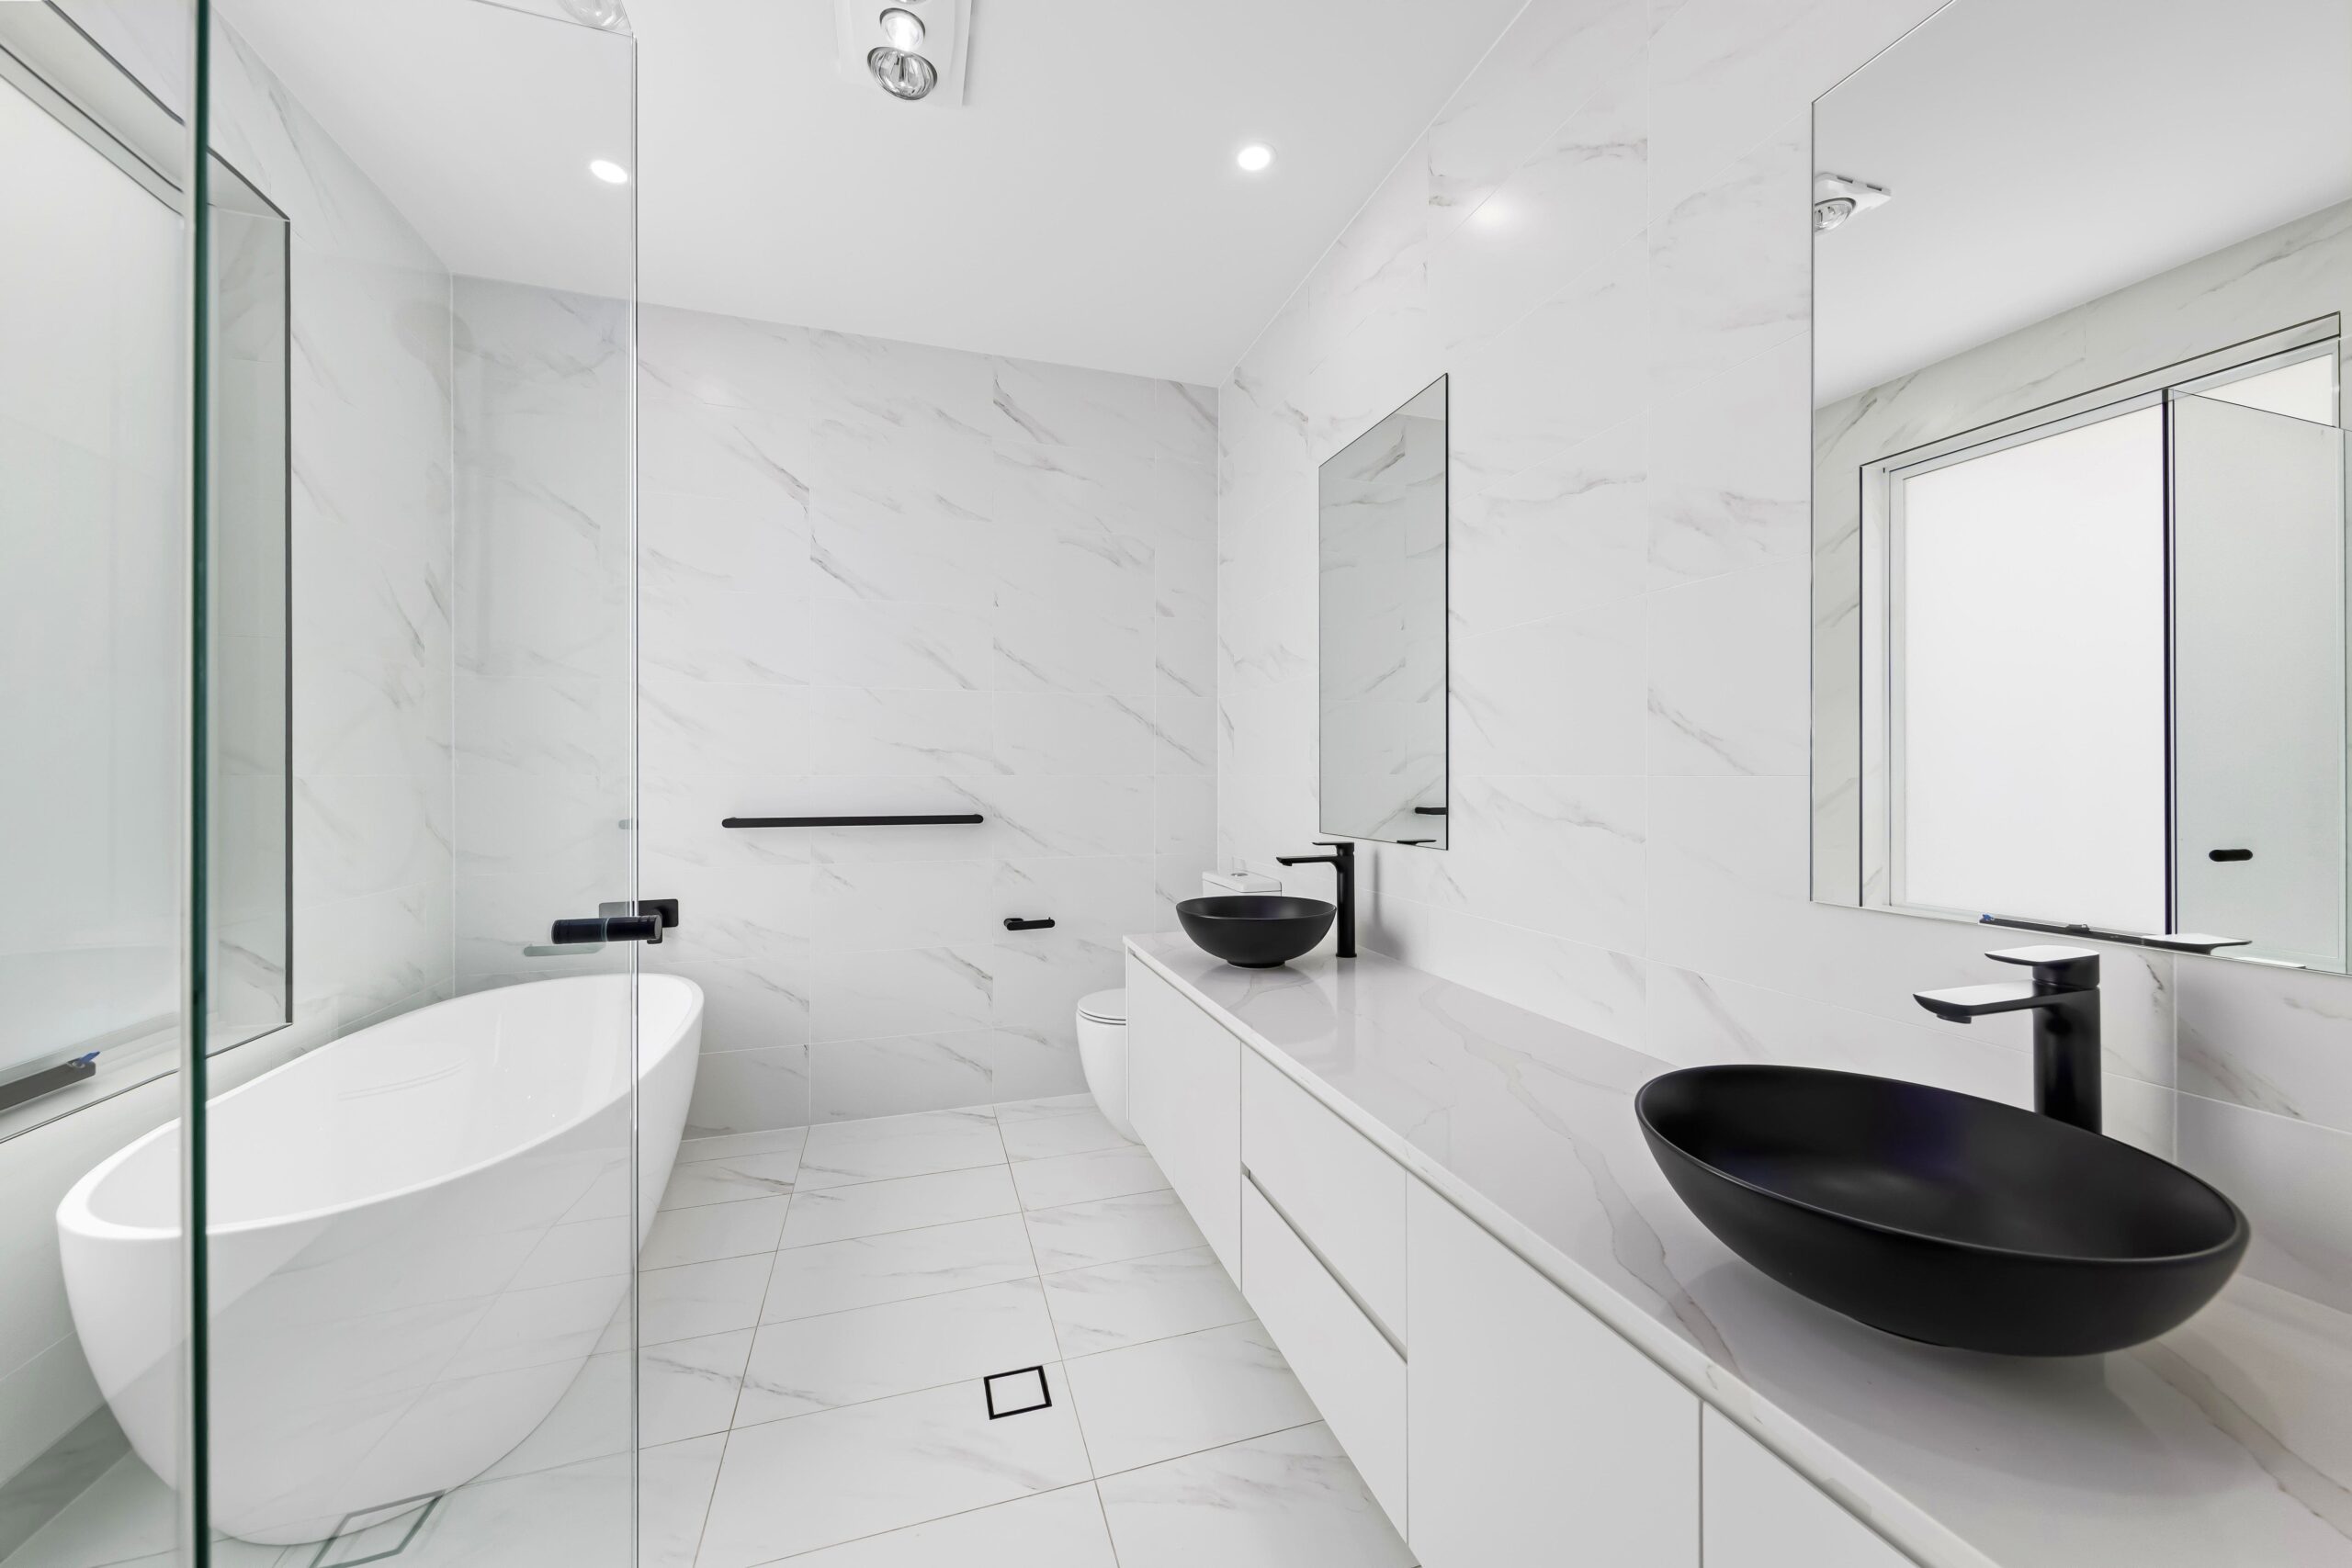 Stylish white bathroom with a bathtub and black sink